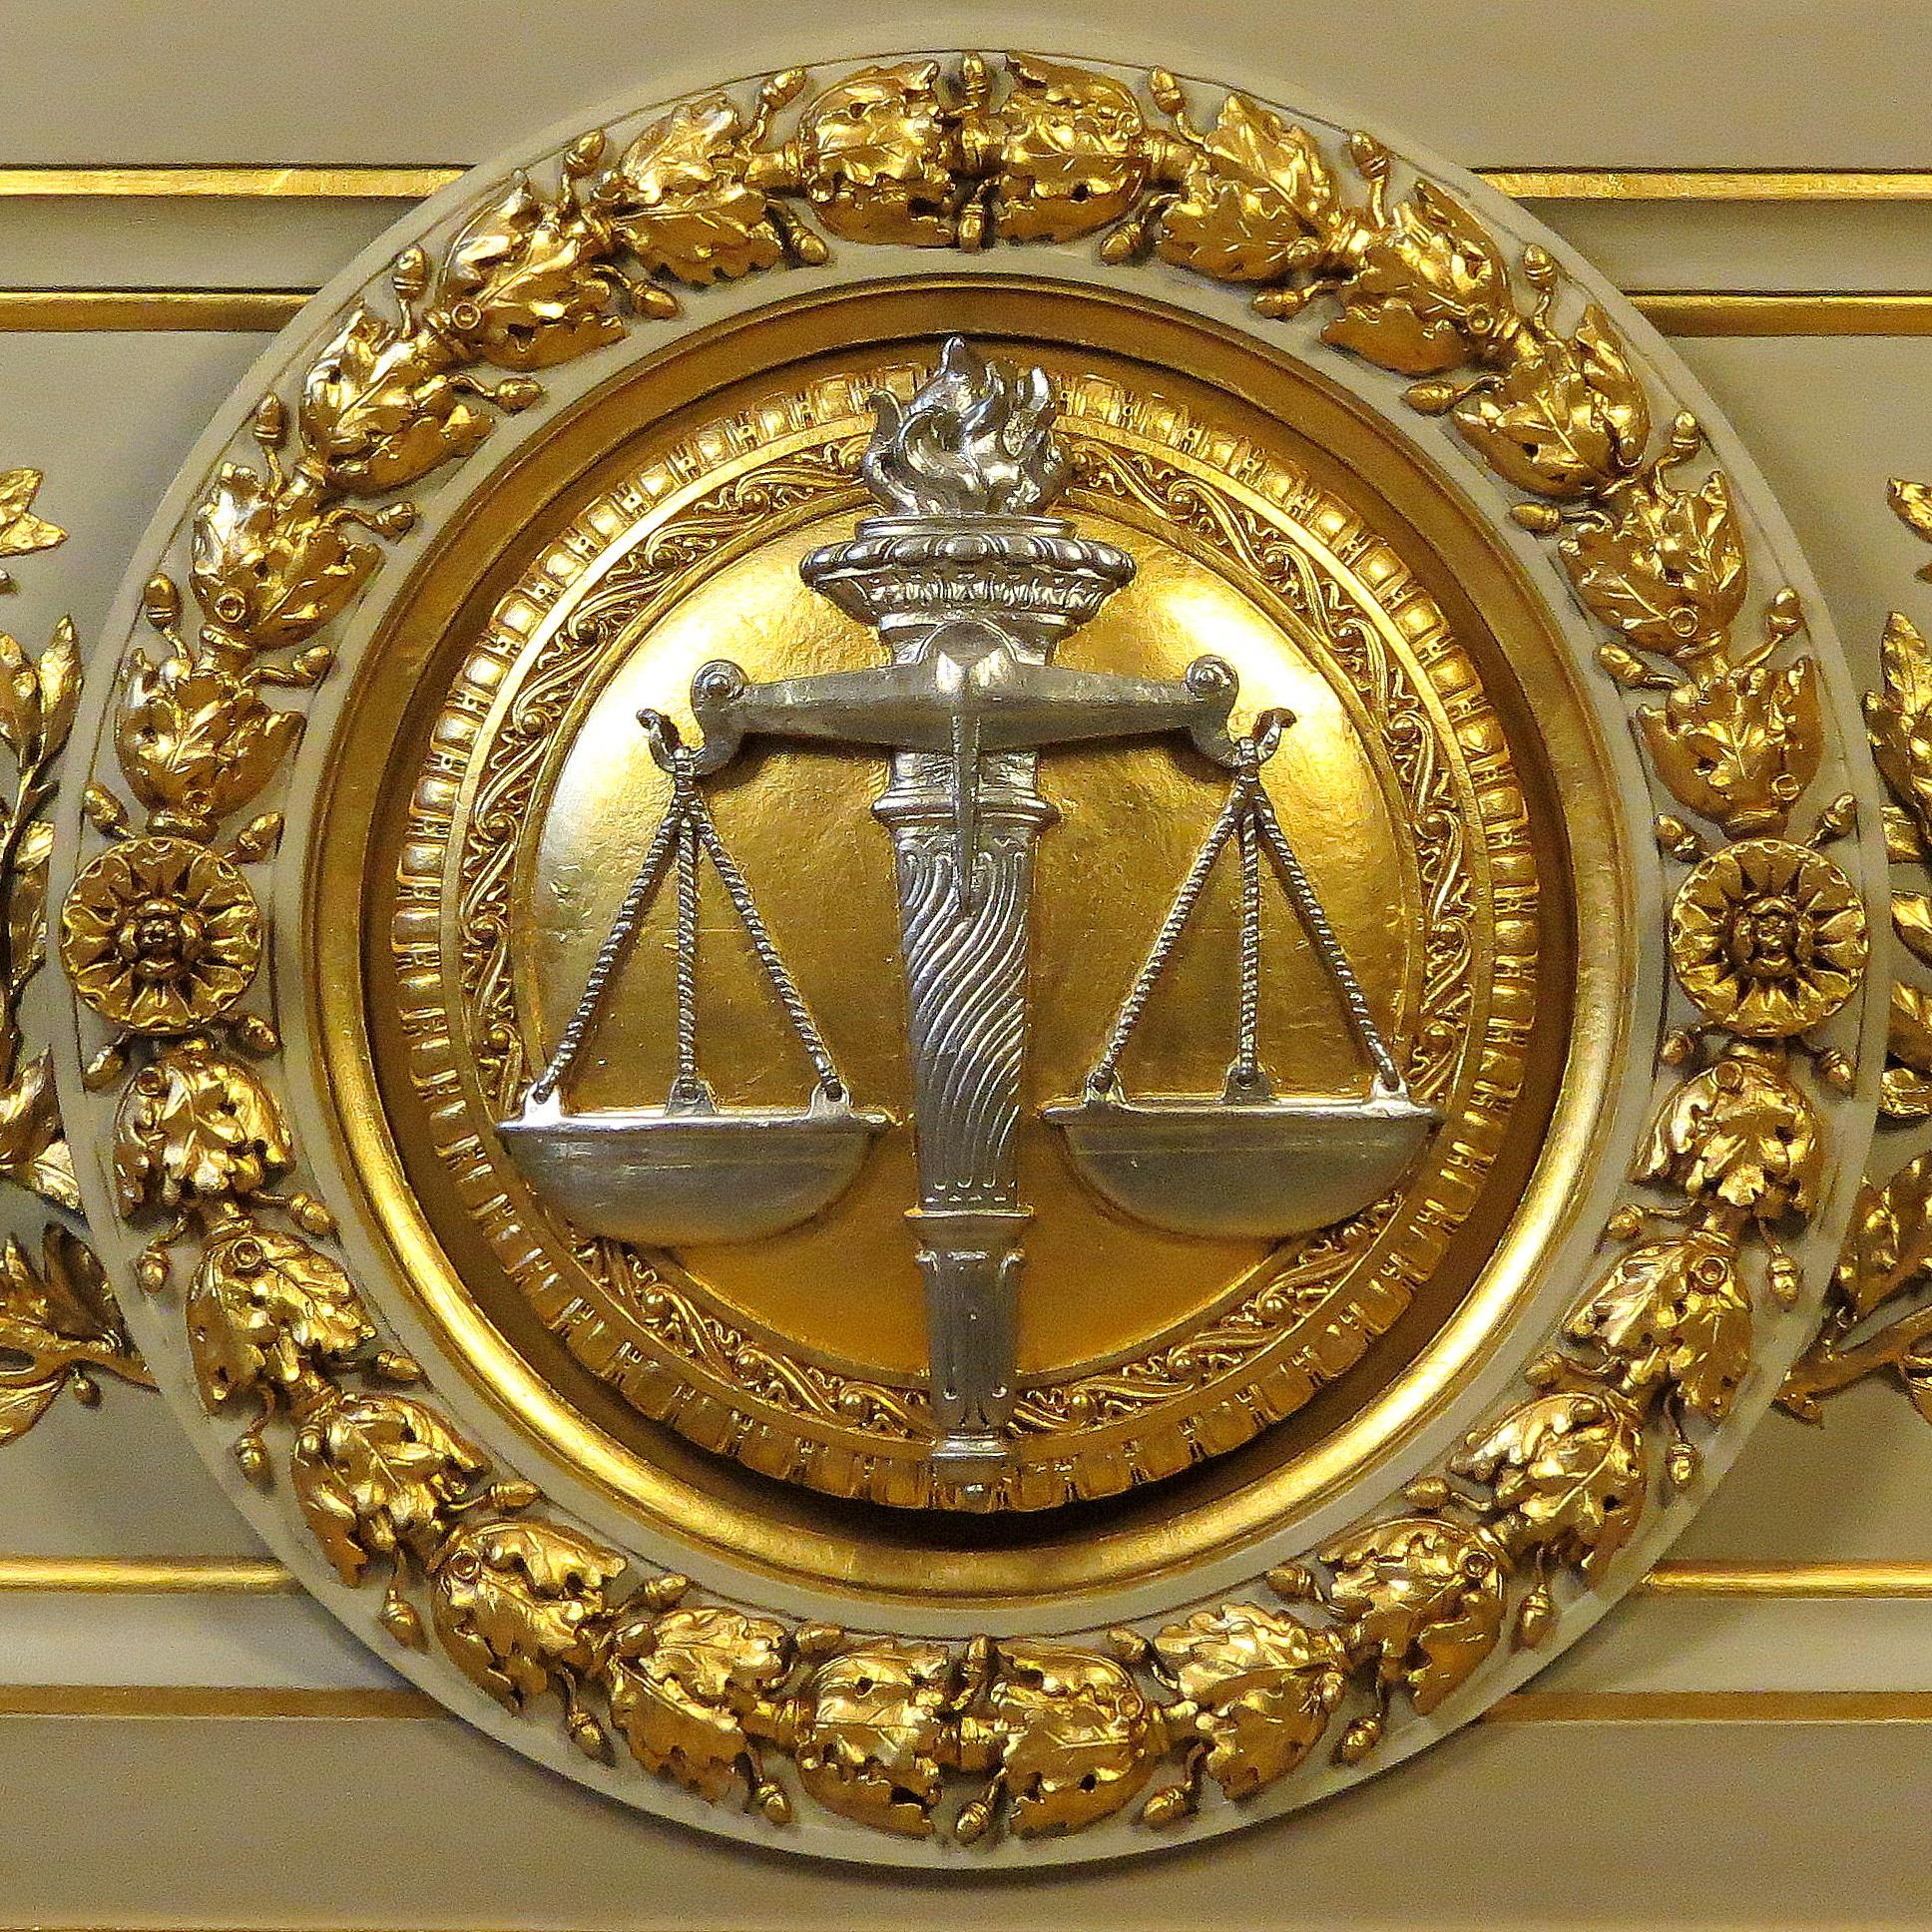 Les symboles de justice – le glaive et la balance | Cour de cassation